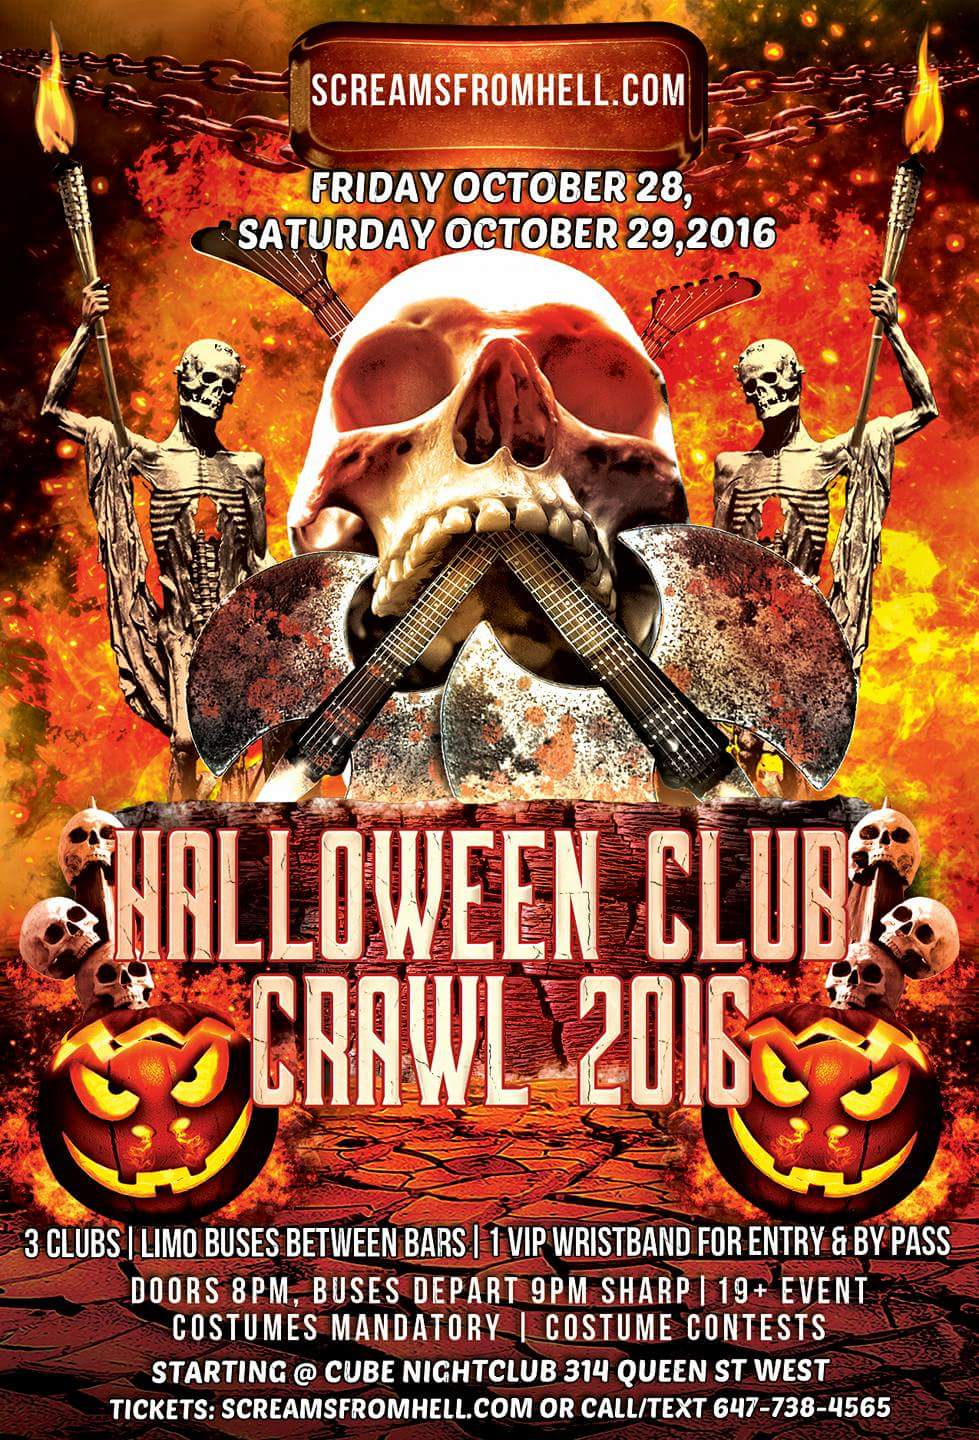 Halloween Club/Pub Crawl SCREAMSFROMHELL